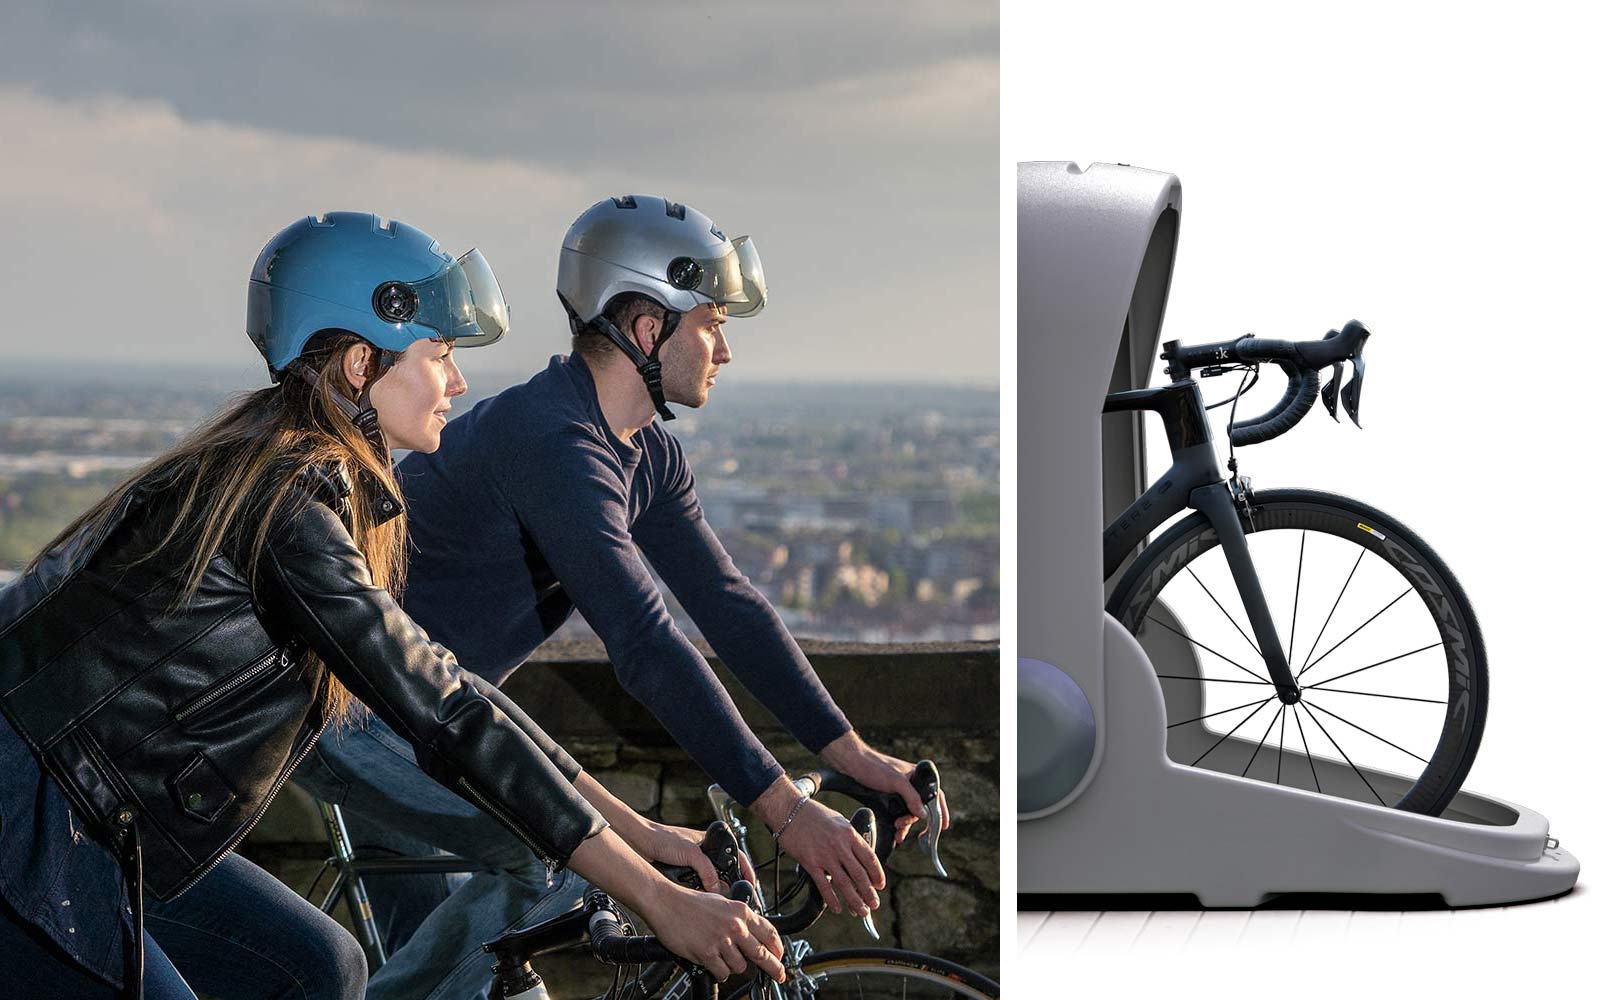 Kask Urban R city commuter bike helmet, Alpen Bike Capsule bike storage locker